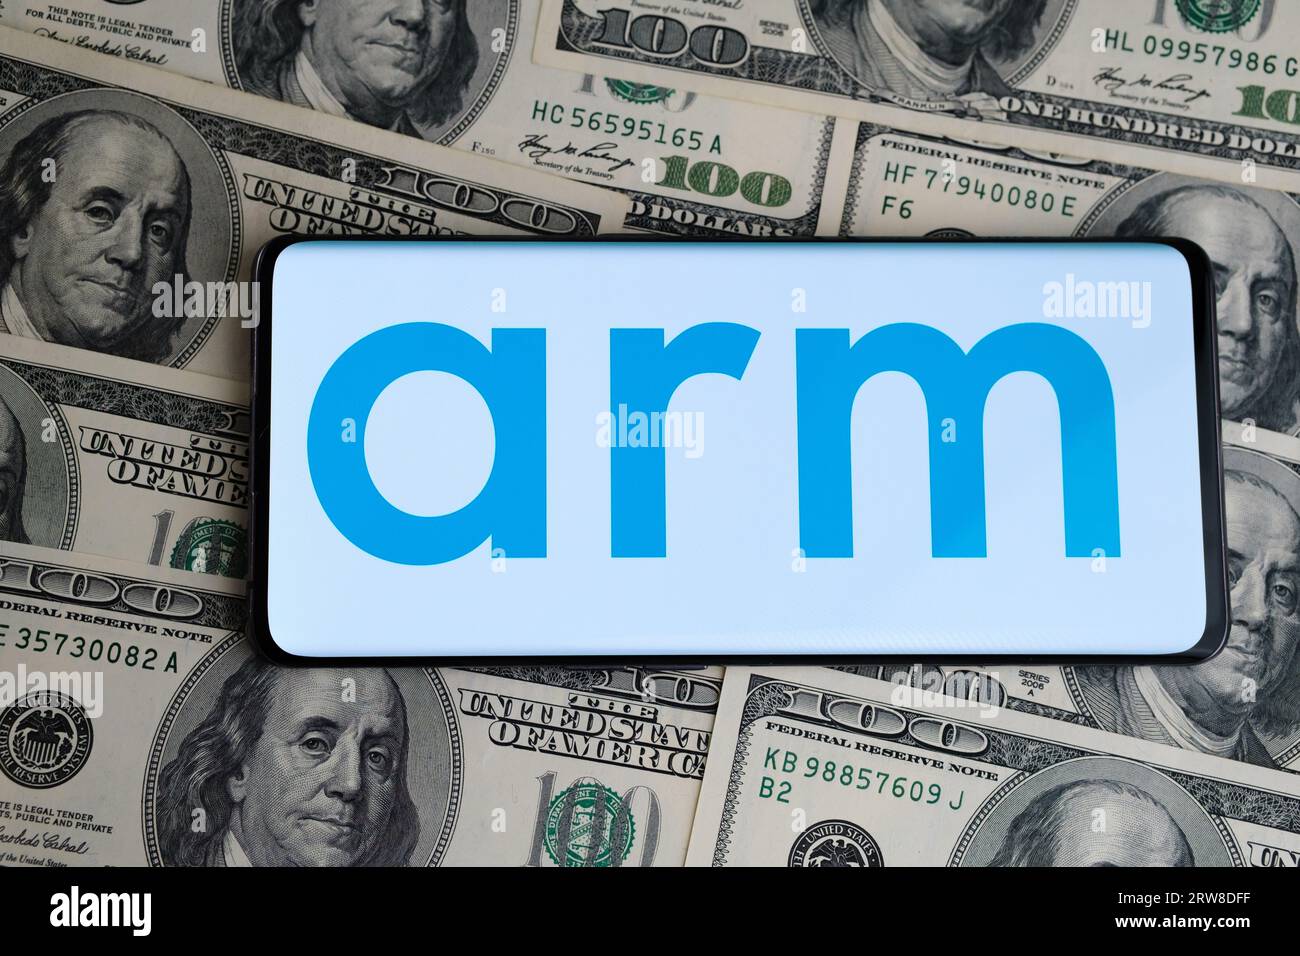 Logo ARM visibile sullo smartphone, che è posizionato su banconote da cento dollari. Concetto di IPO e profitti della società ARM. Londra, Regno Unito, 17, 20 settembre Foto Stock